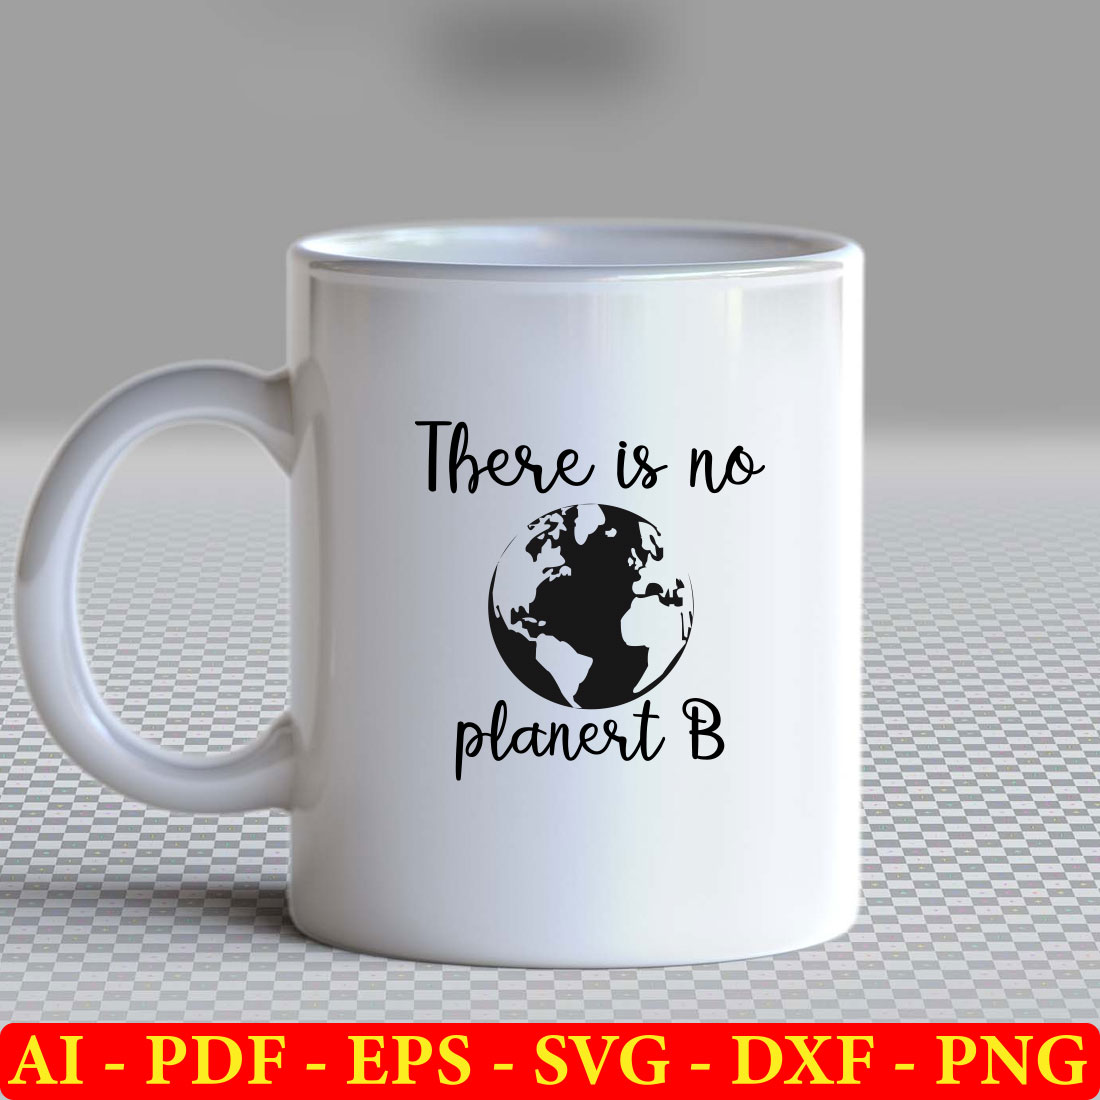 There is no planet b coffee mug.